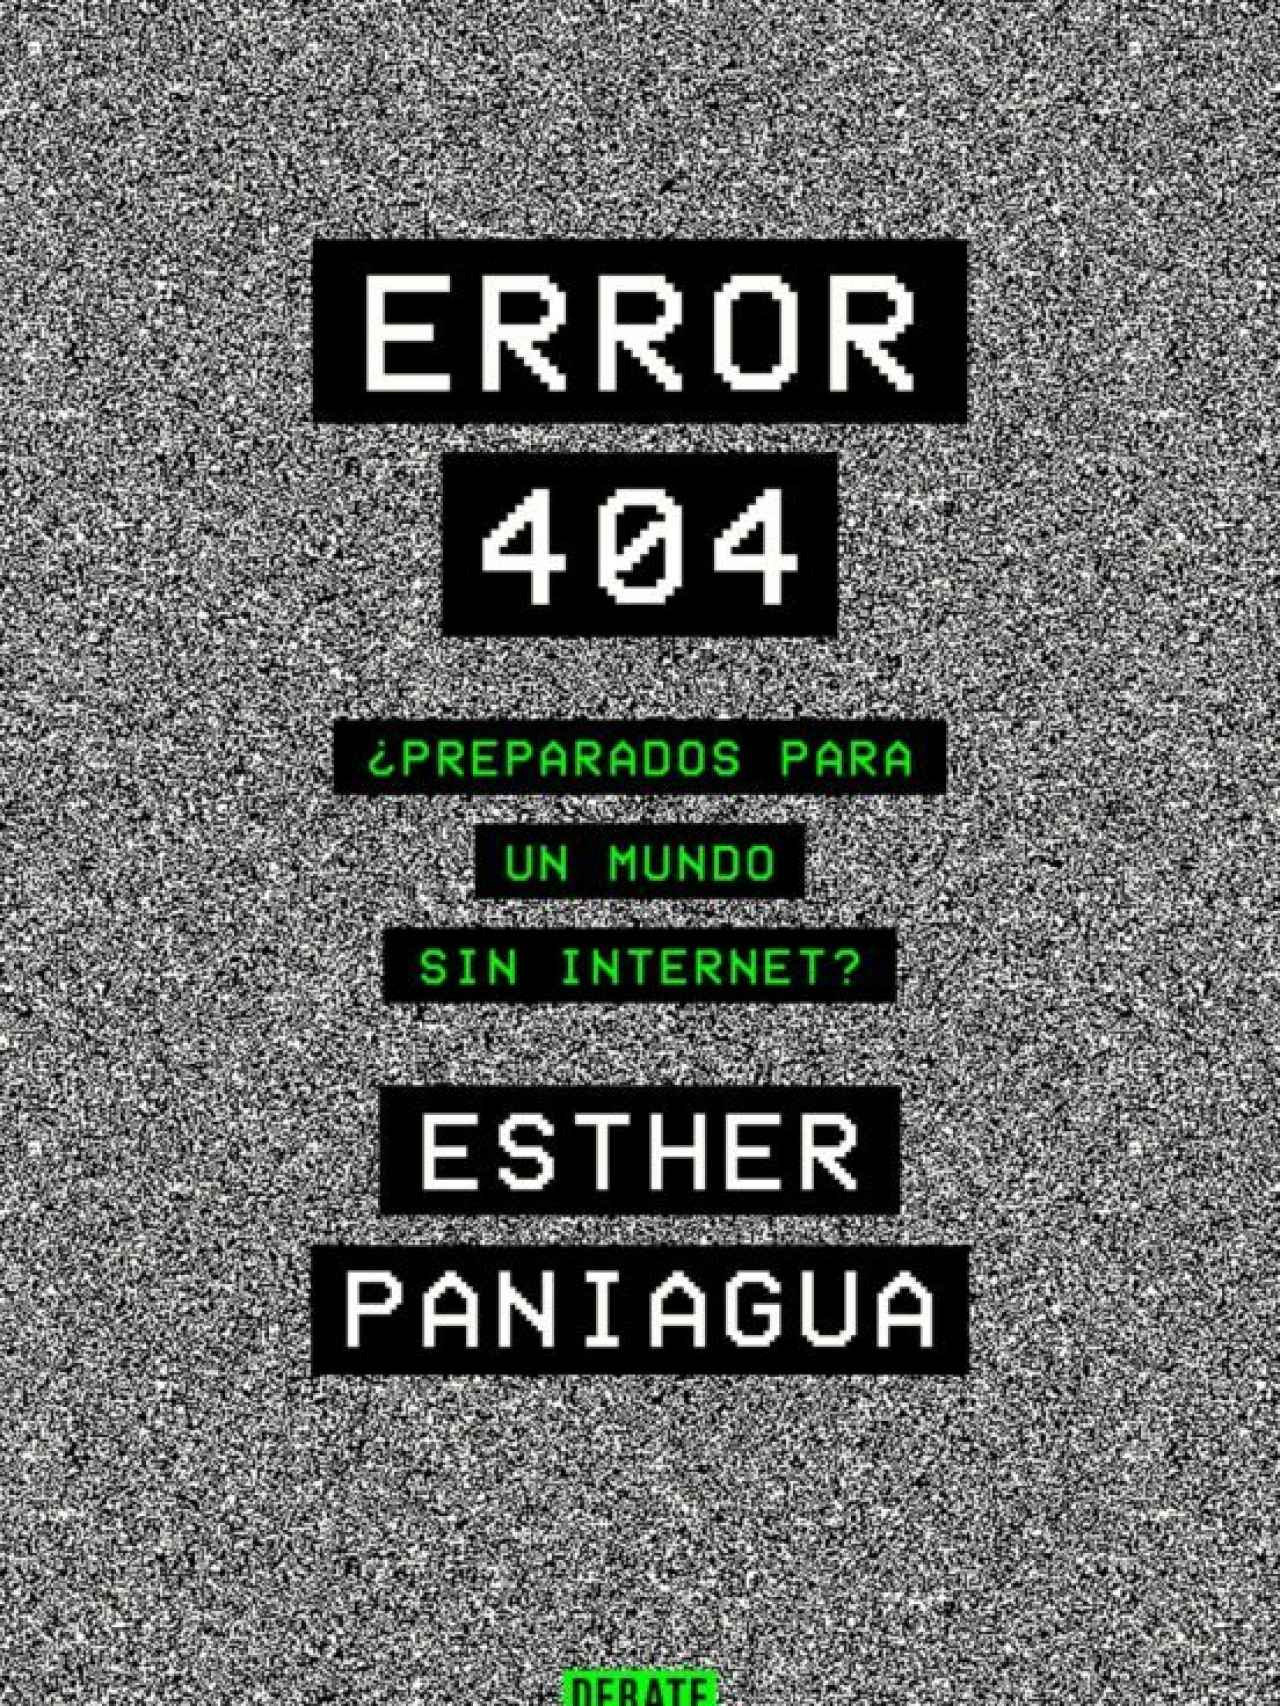 Portada de 'Error 404', libro de Esther Paniagua.